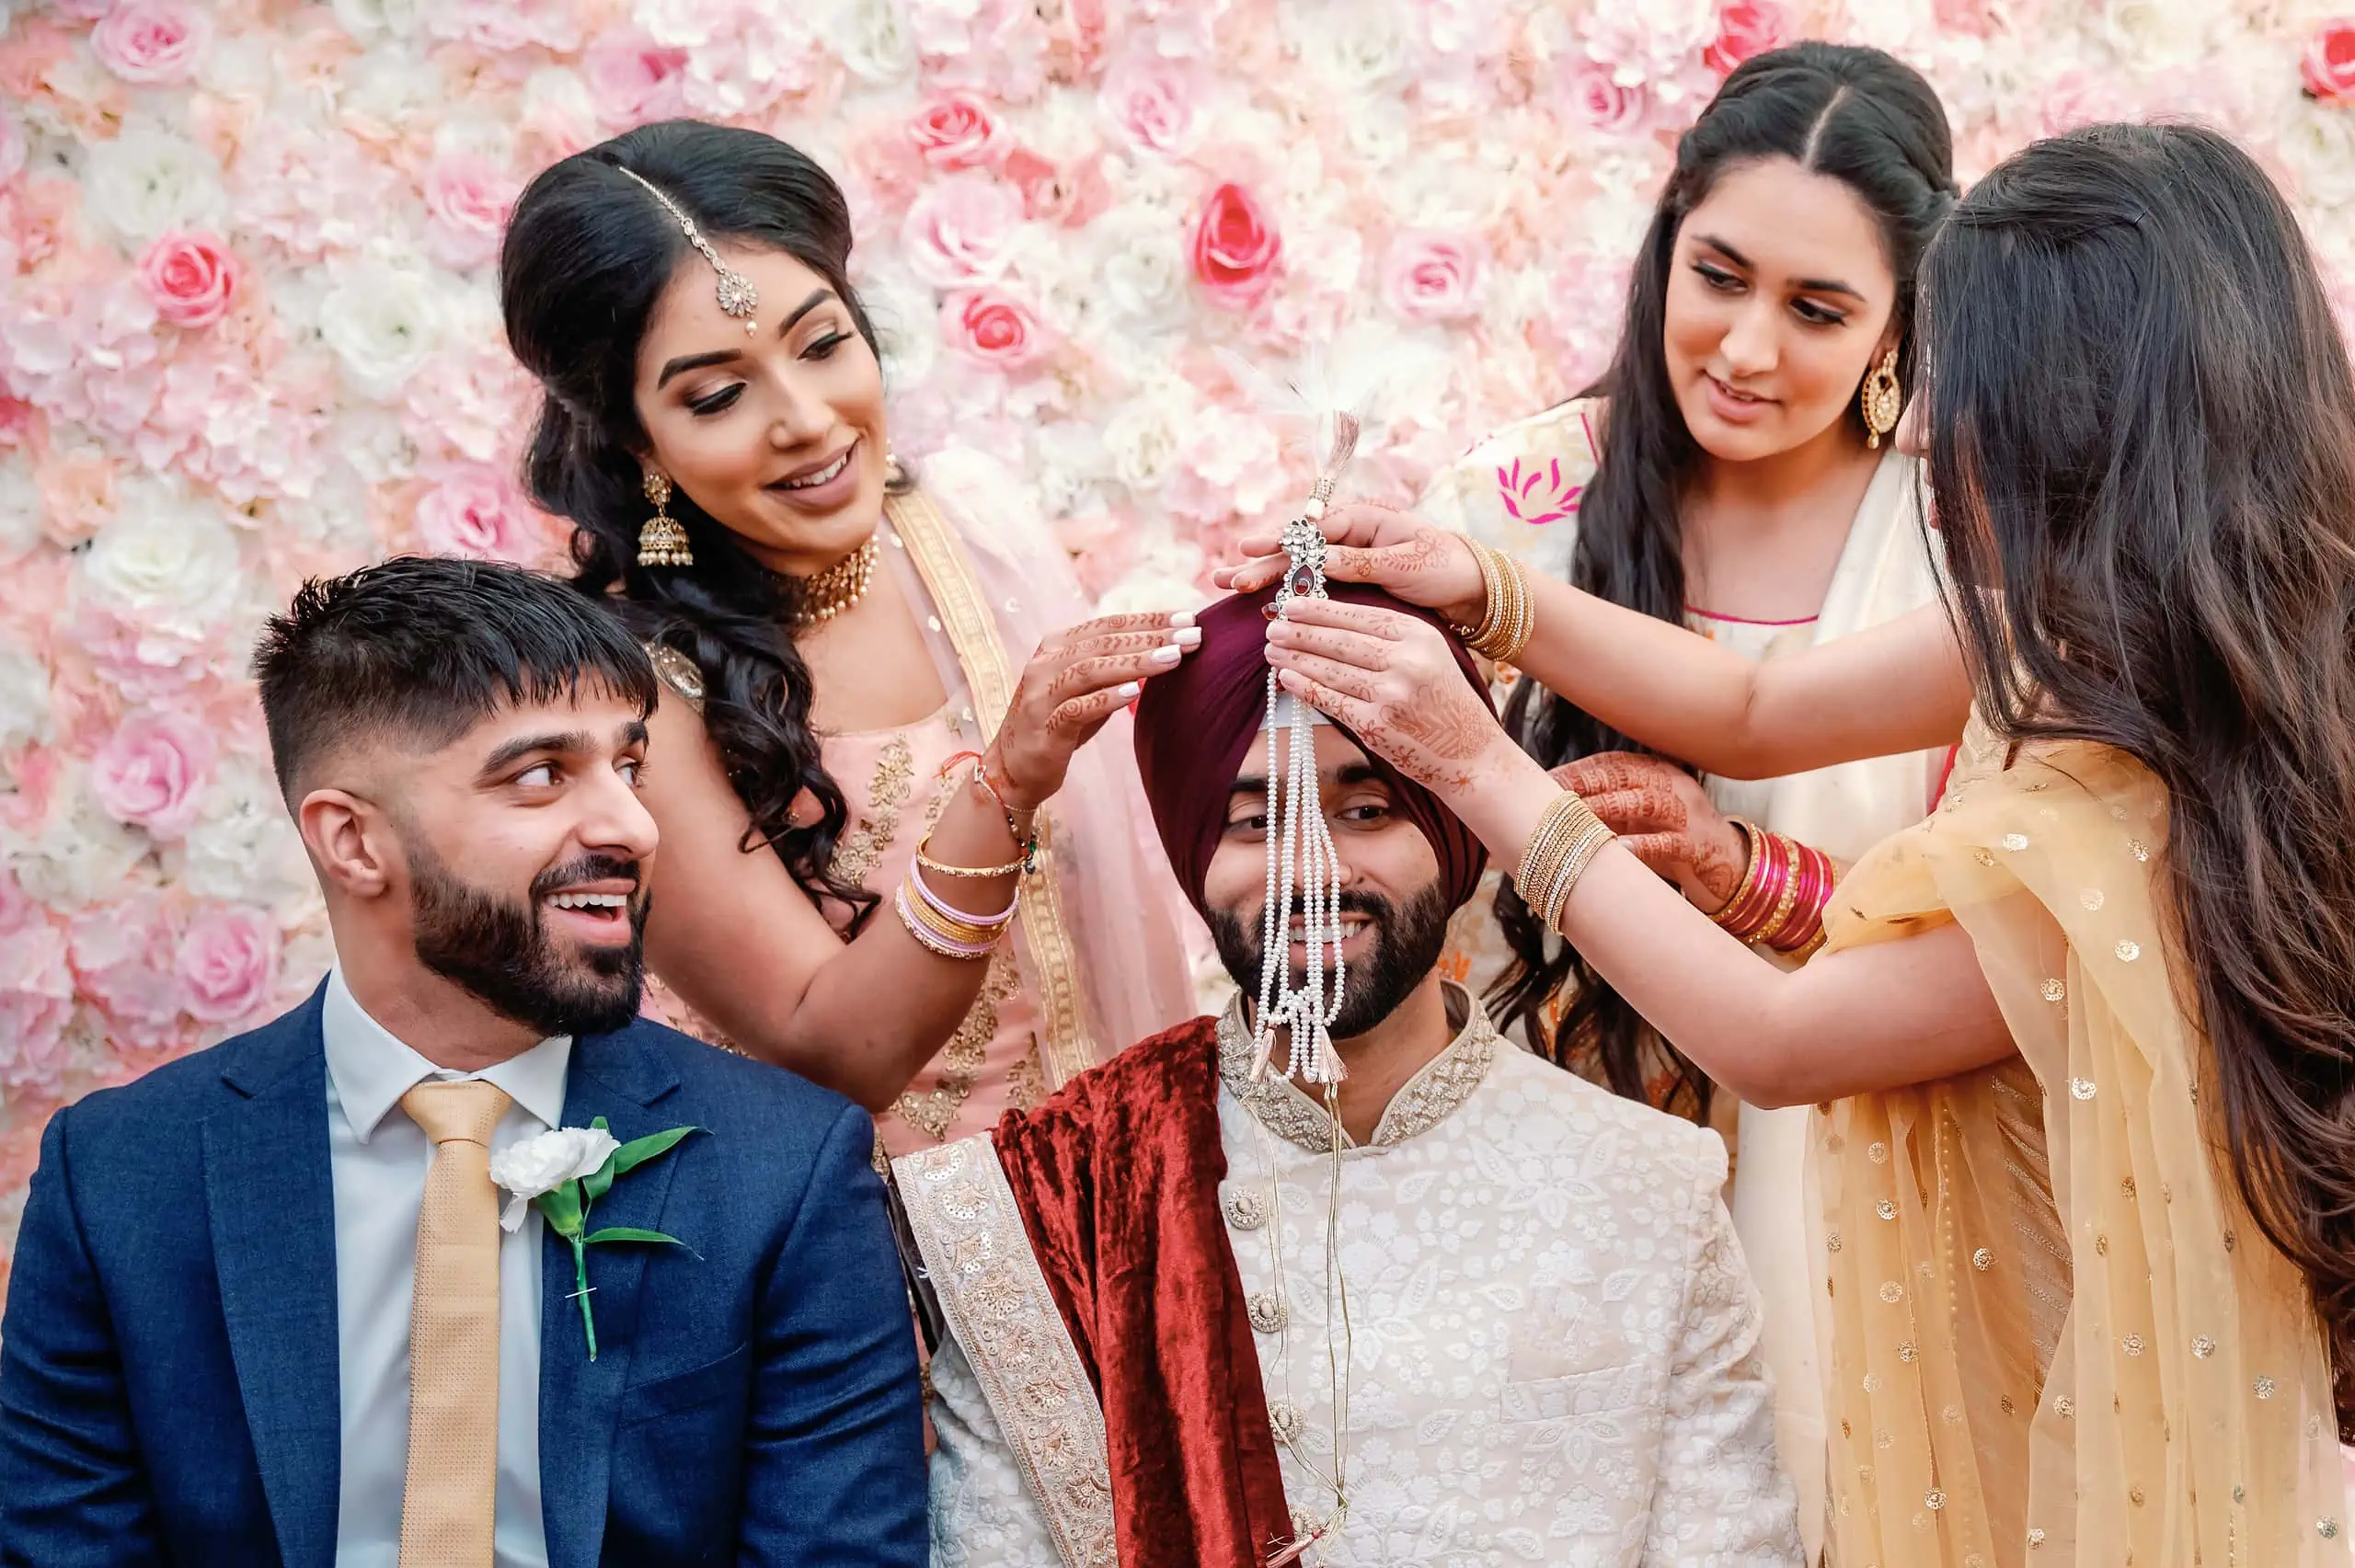 Sister's attaching the Kalgi Punjabi wedding